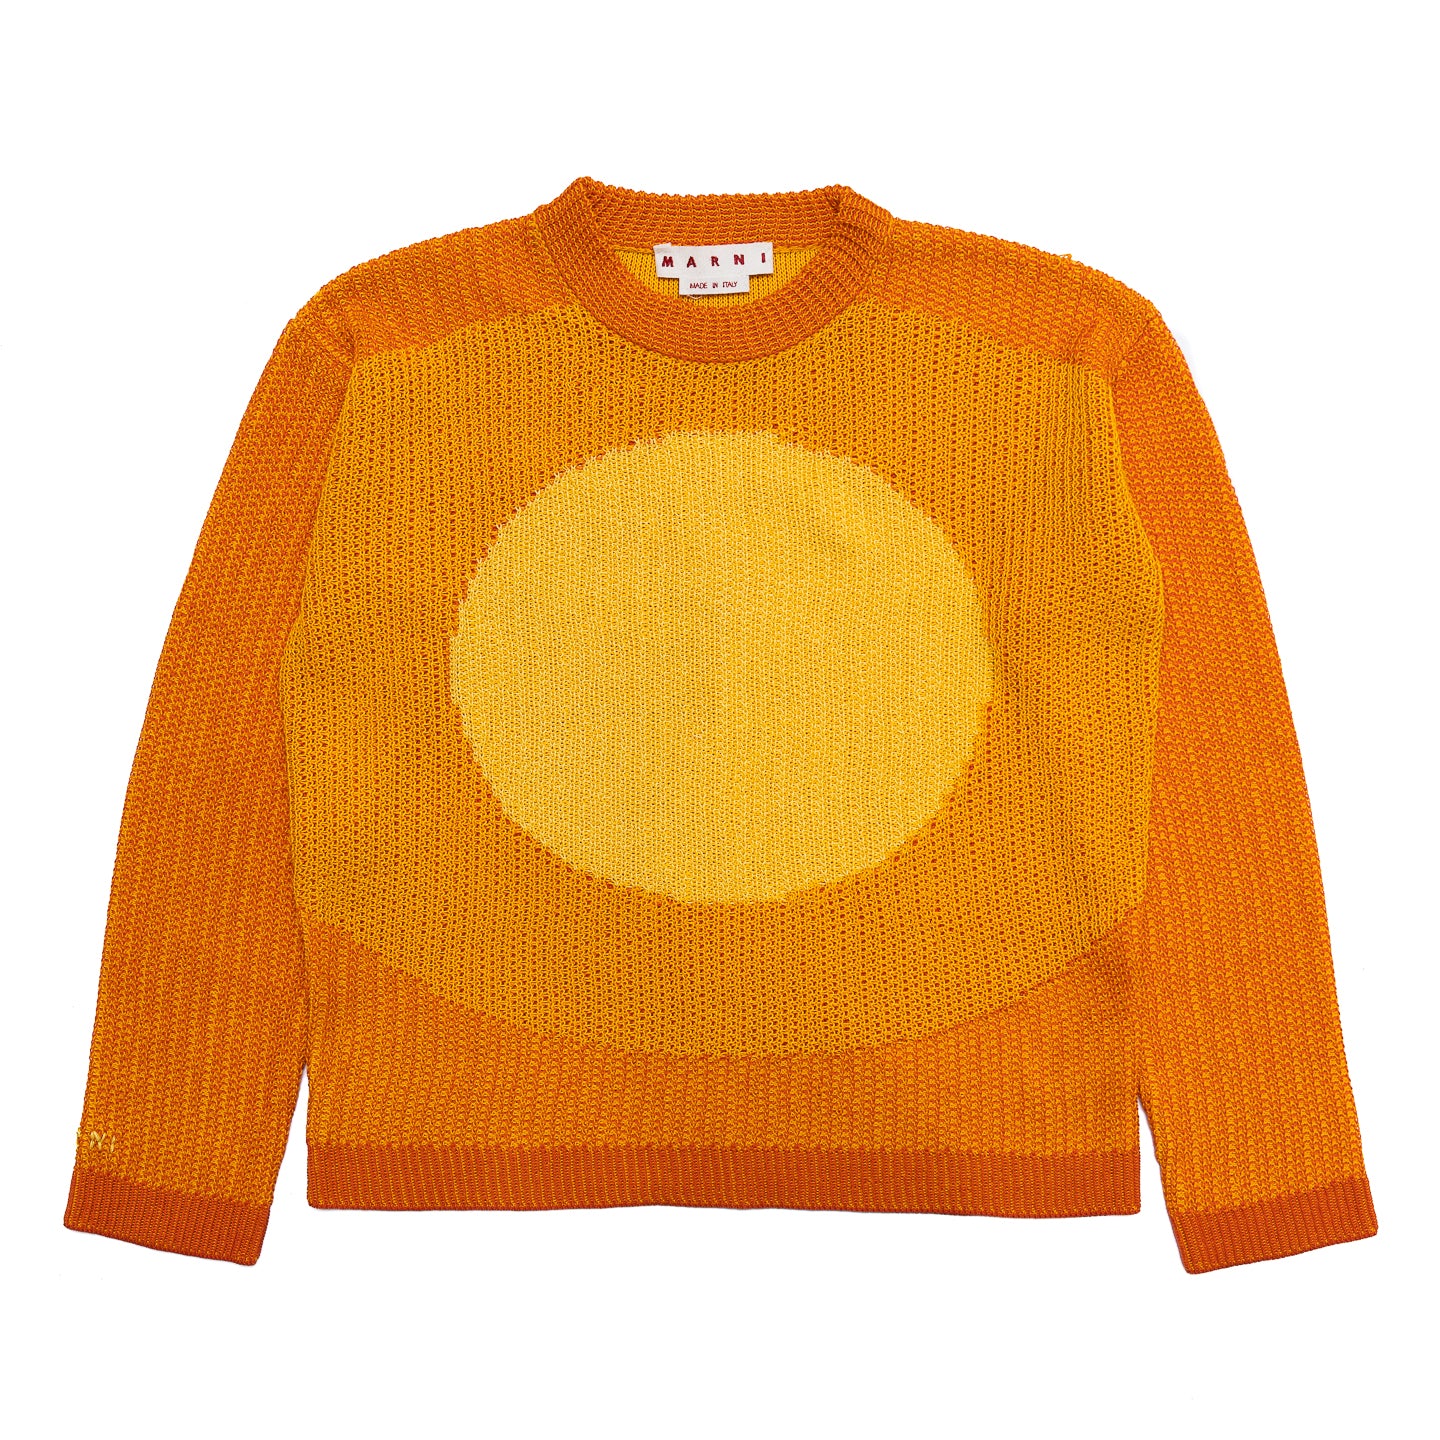 MARNI Inlay Circle Sweater 'Light Orange'